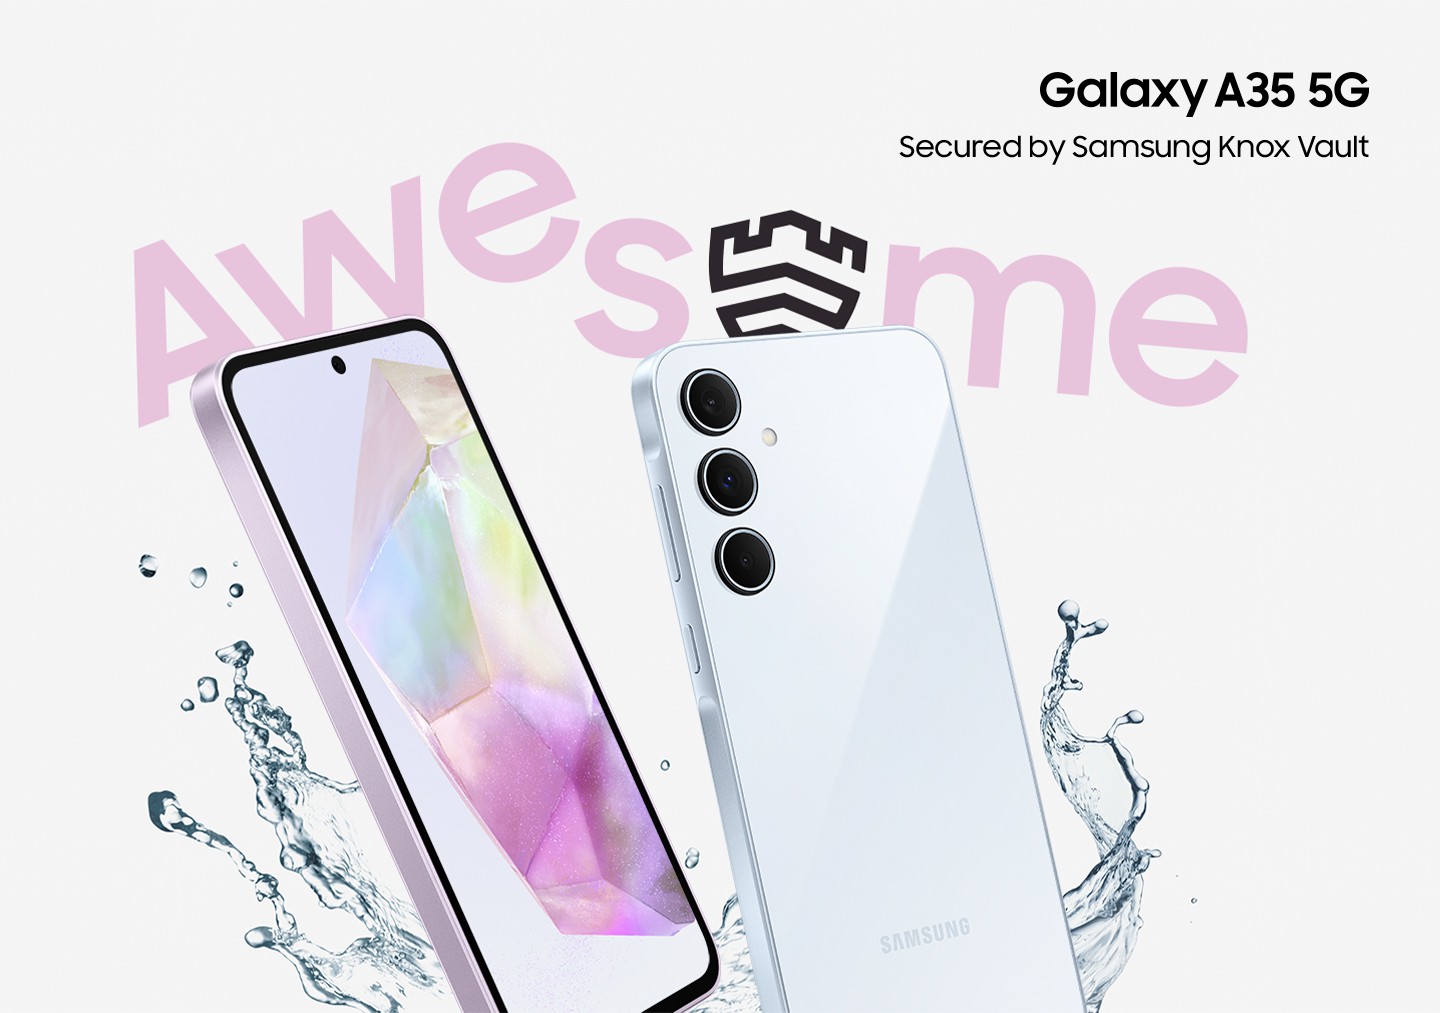 Zwei schrg angewinkelte Smartphones mit Wasserspritzern um sie herum und dem Wort "AWESOME". Das Smartphone-Display zeigt ein Hintergrundbild mit Farbverlauf. Auf der Rckseite ist eine Triple-Kamera zu sehen. Galaxy A35 5G-Logo. Der Text liest: 